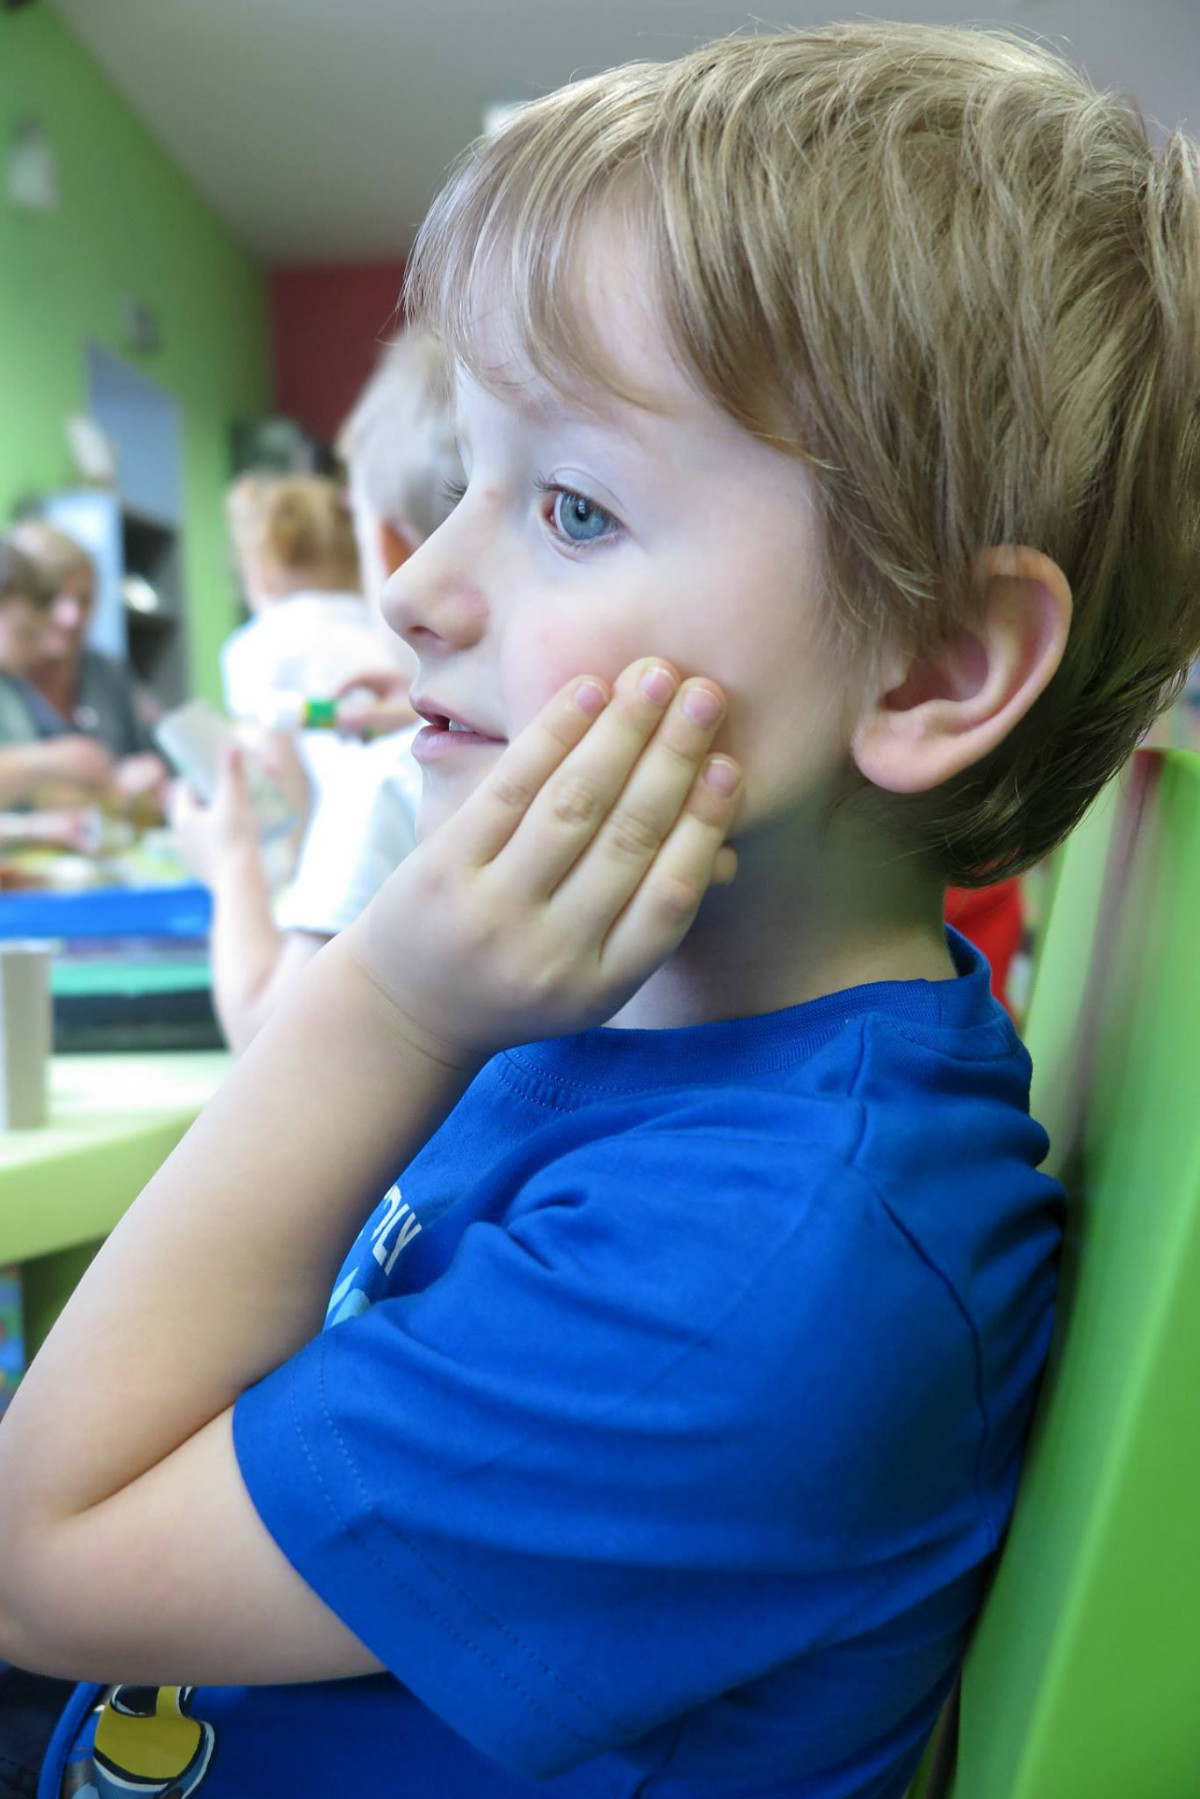 Przy stoliku siedzi chłopiec w niebieskiej koszulce.